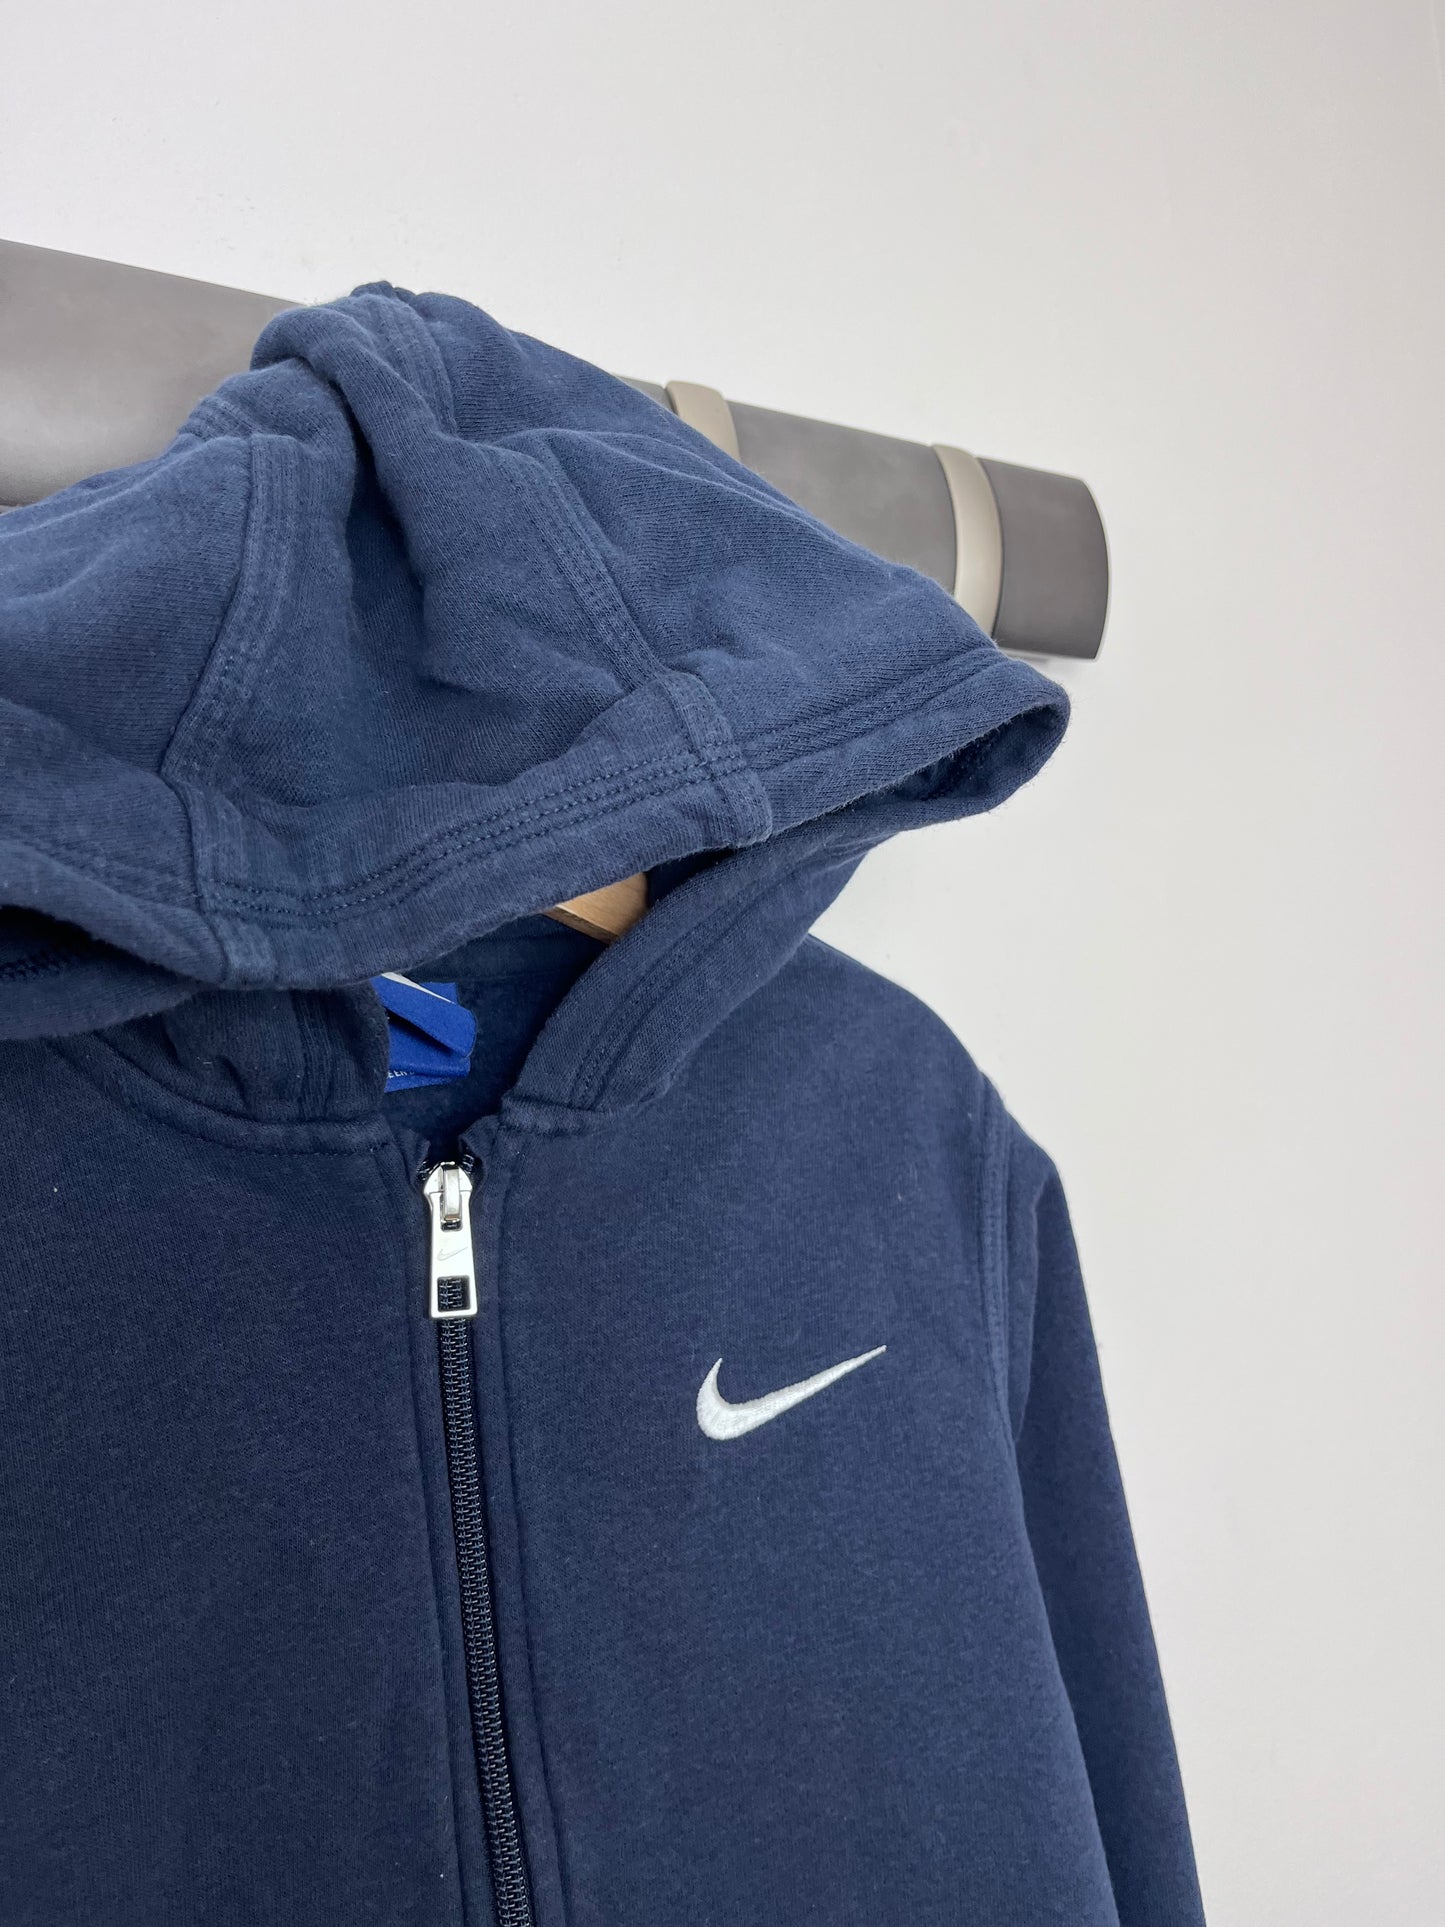 Nike 8-10 Years-Hoodies-Second Snuggle Preloved